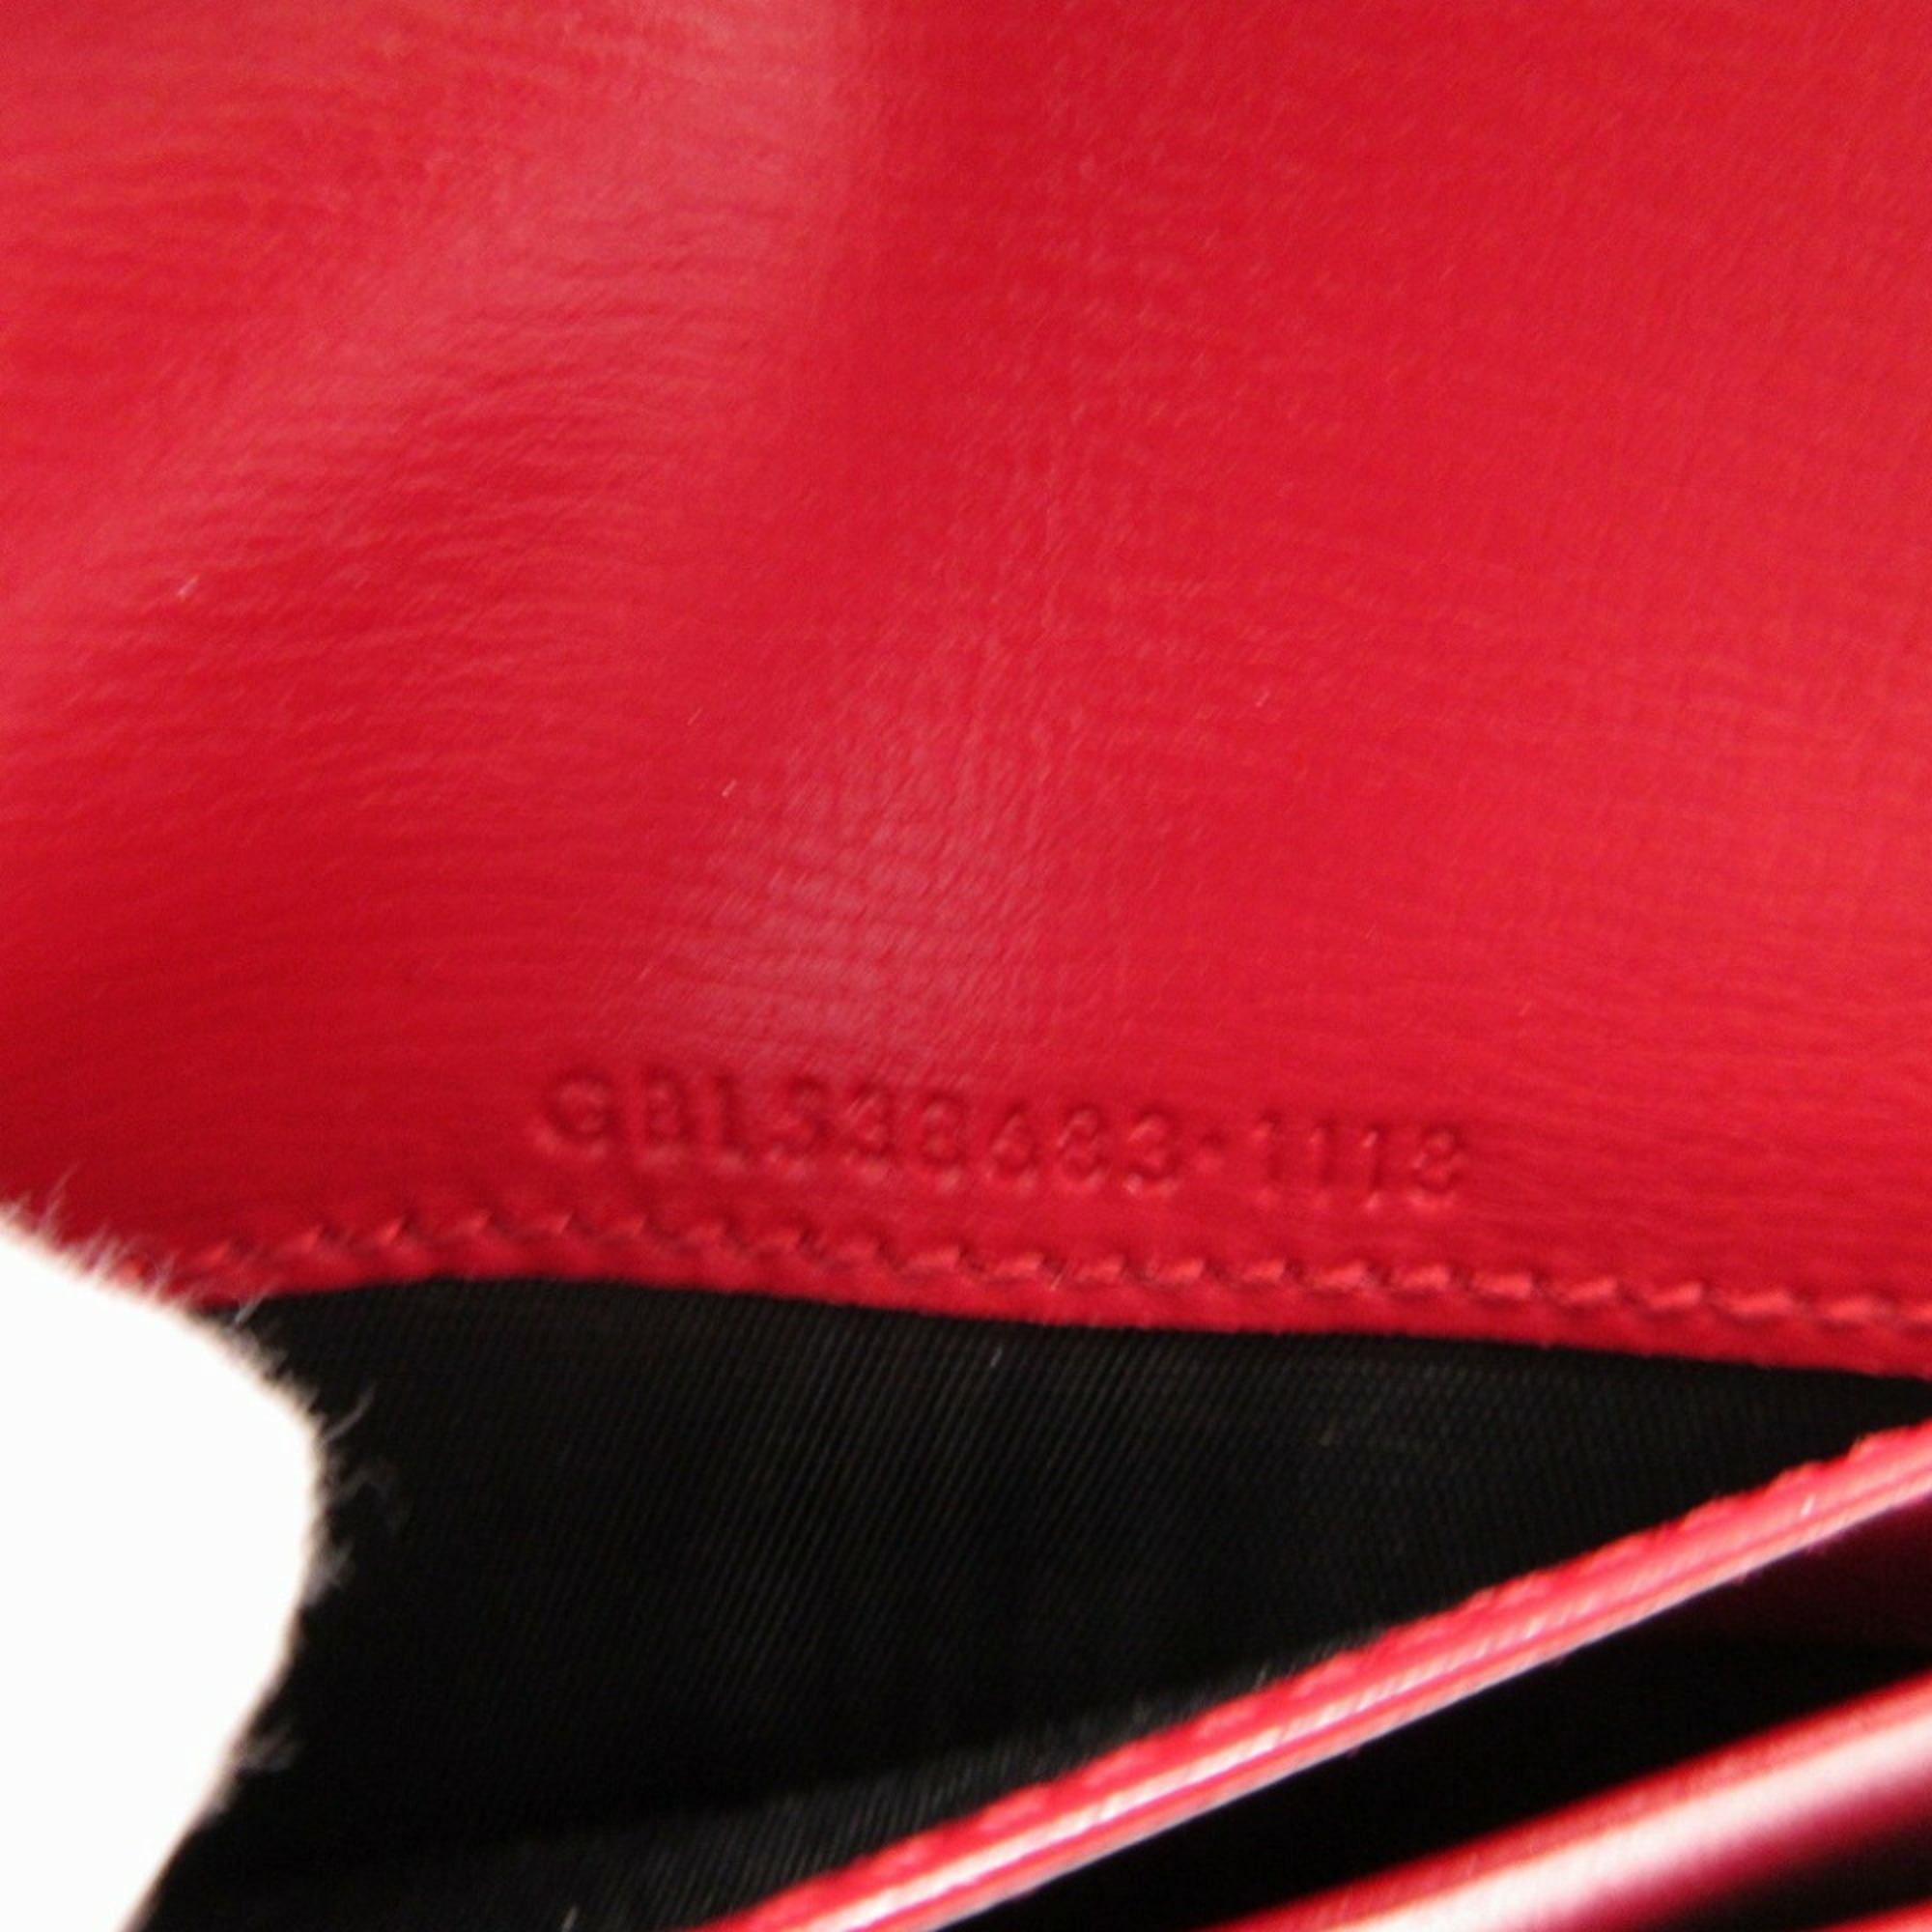 Yves Saint Laurent Saint Laurent Paris 538683 Leather Red Bifold Wallet 0013SAINT LAURAENT PARIS